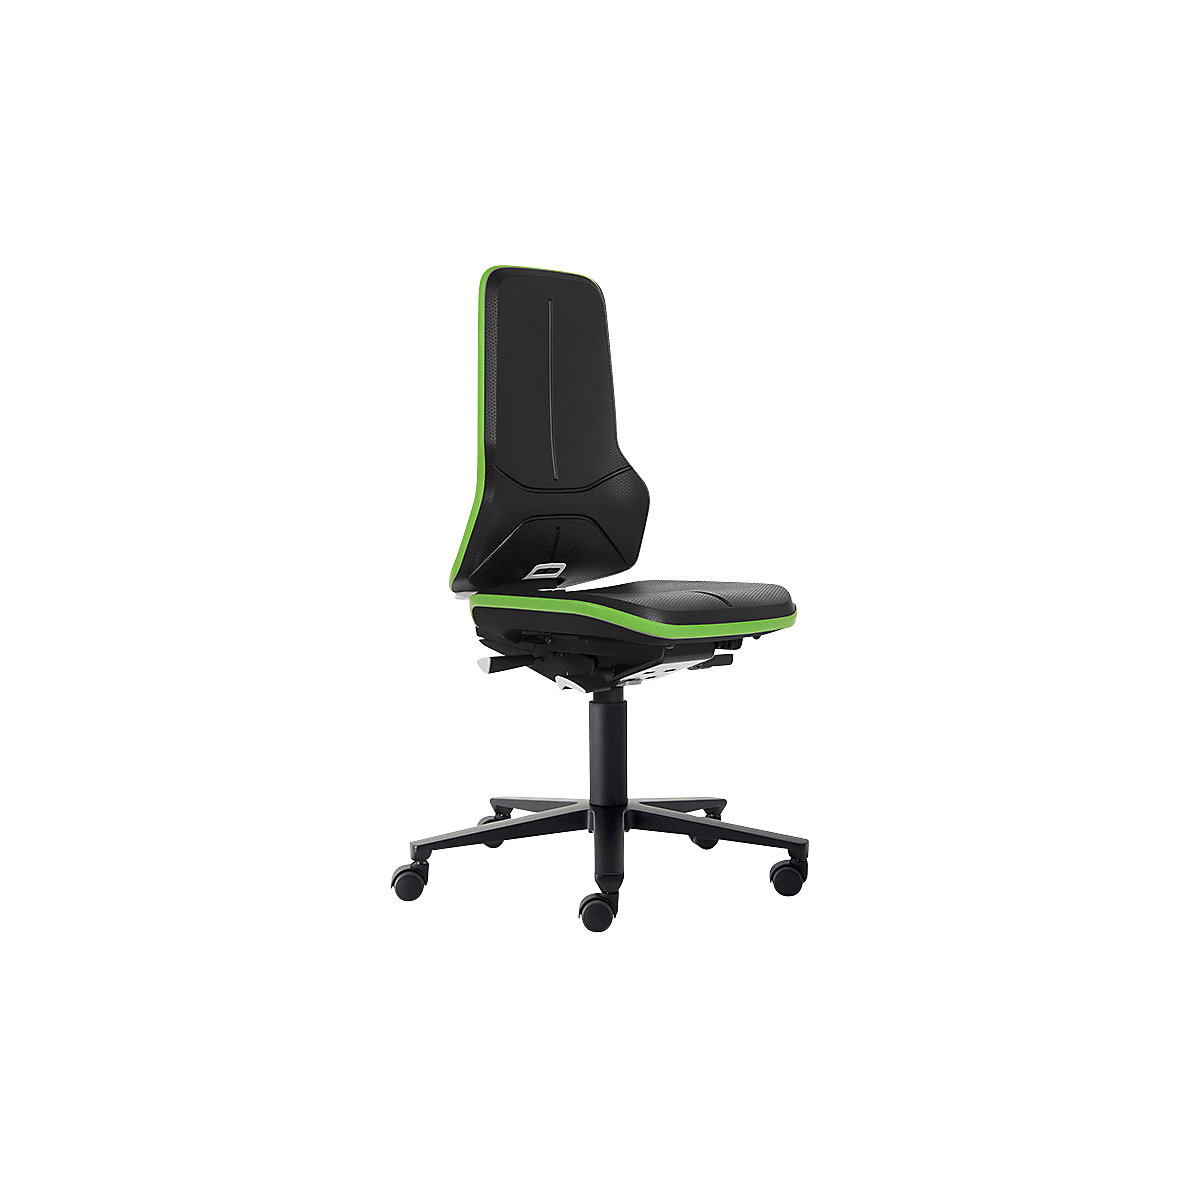 NEON pracovná otočná stolička ESD, kolieska – bimos, permanentný kontakt, PU pena, flexibilná páska zelená-8